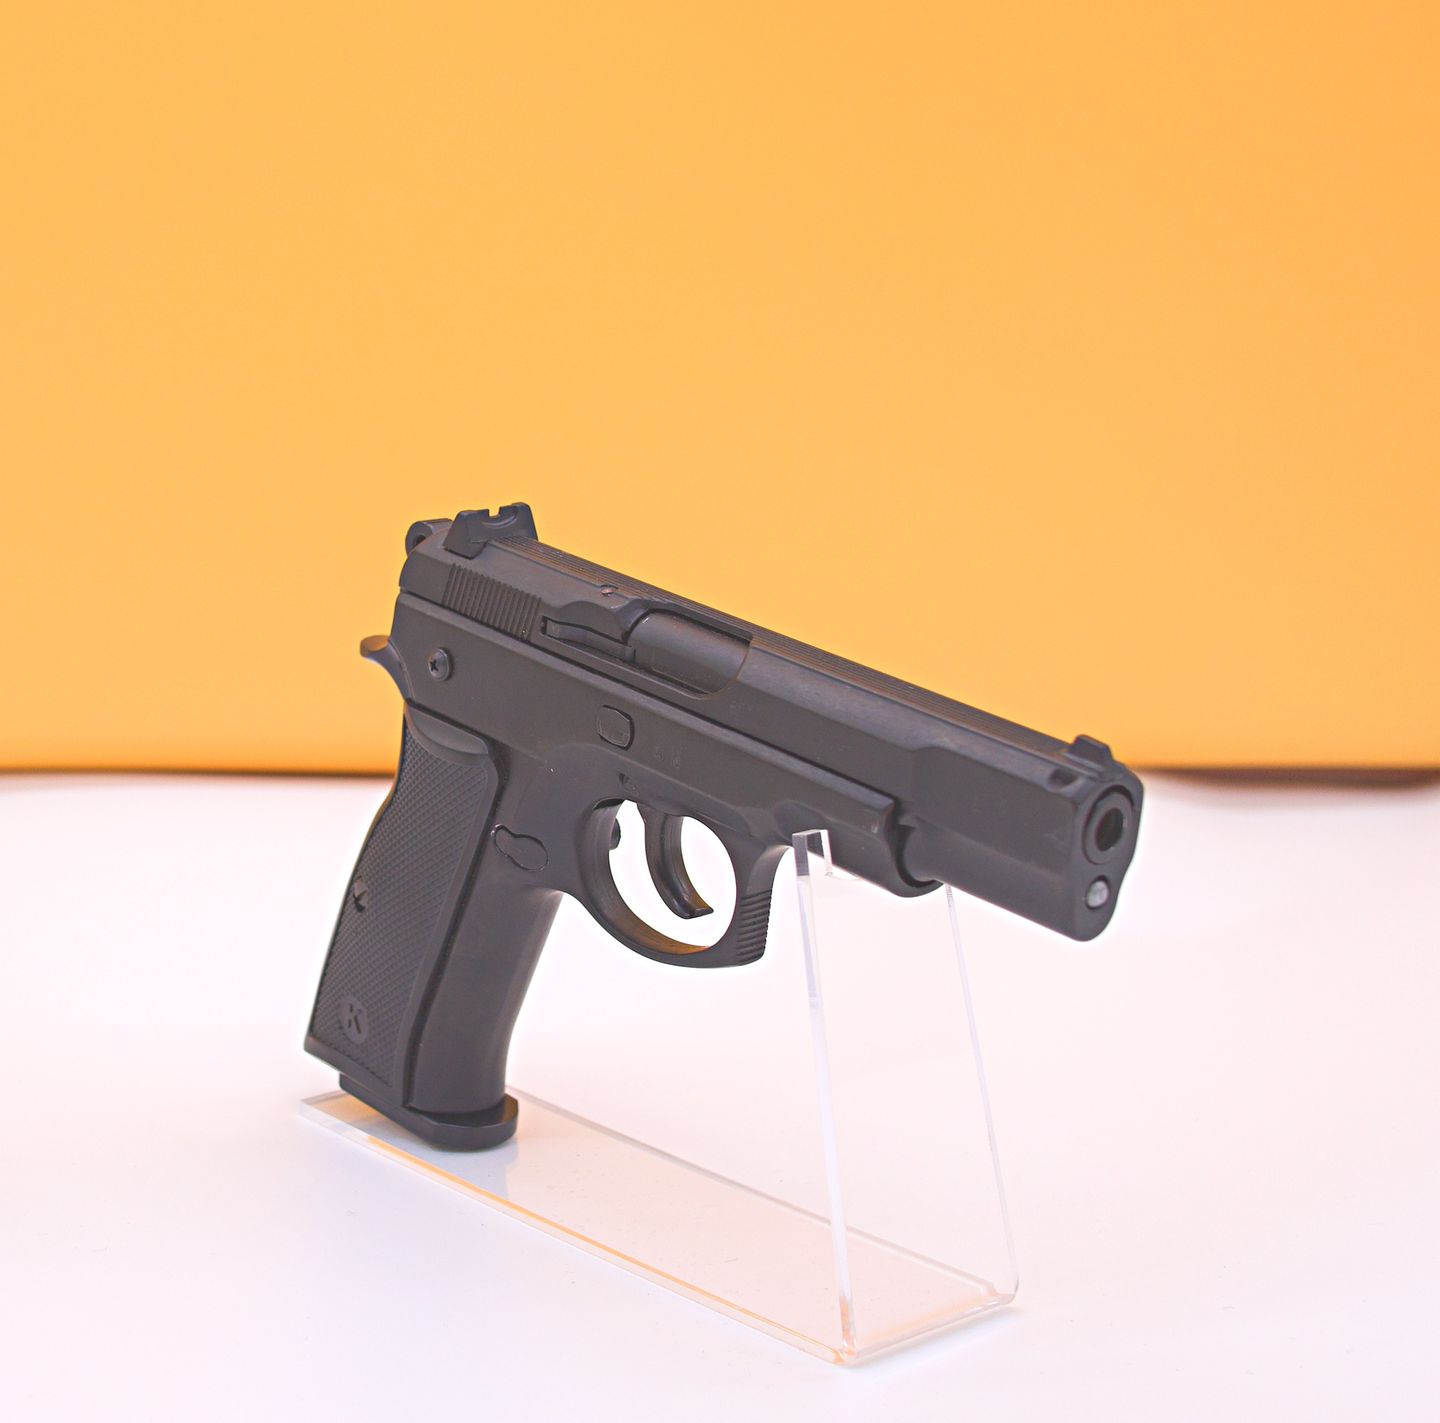 Pistola de alarma y defensa - Pistola de alarma y defensa Kimar 75 9mm PAK – estilo CZ 75